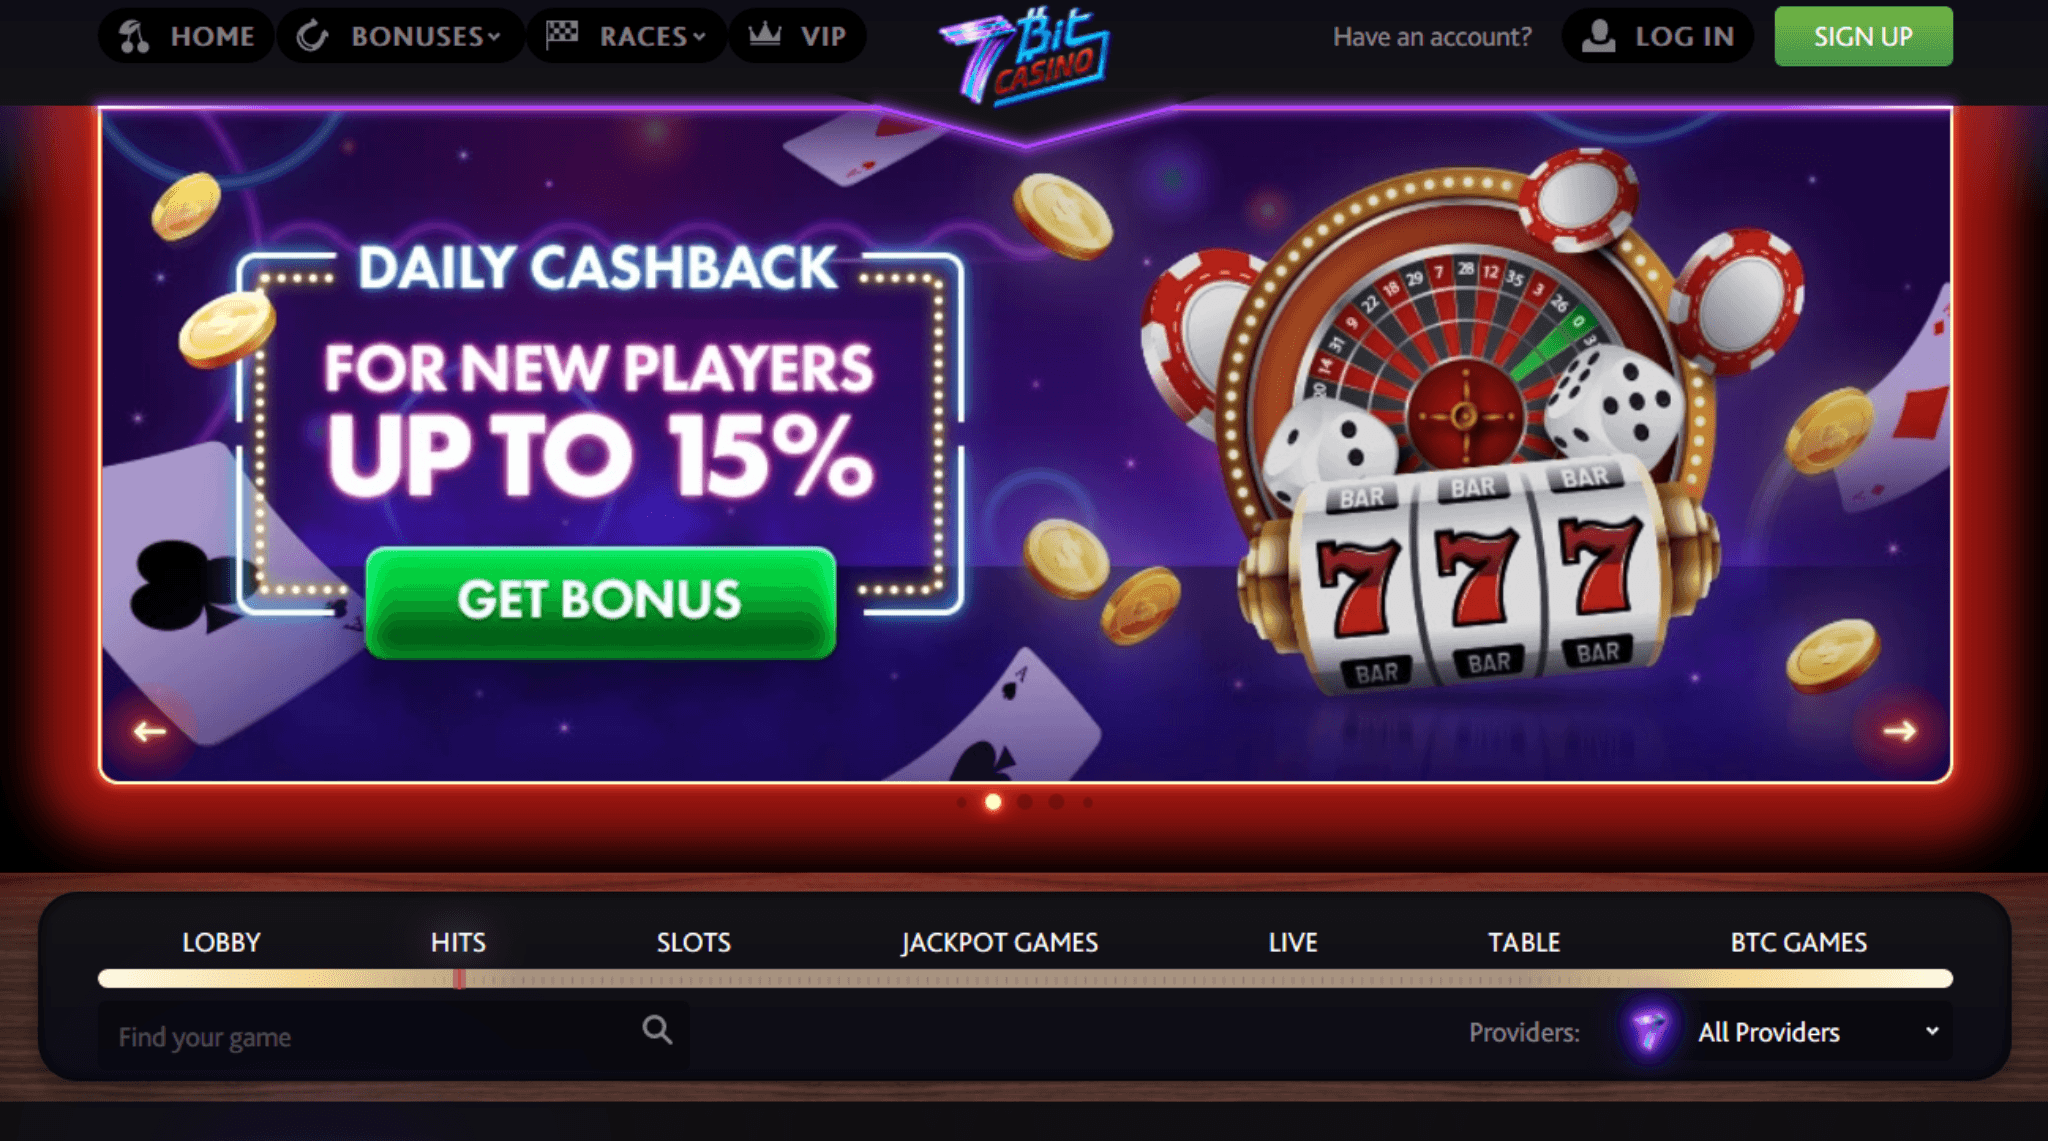 7bitcasino casino бездепозитный бонус